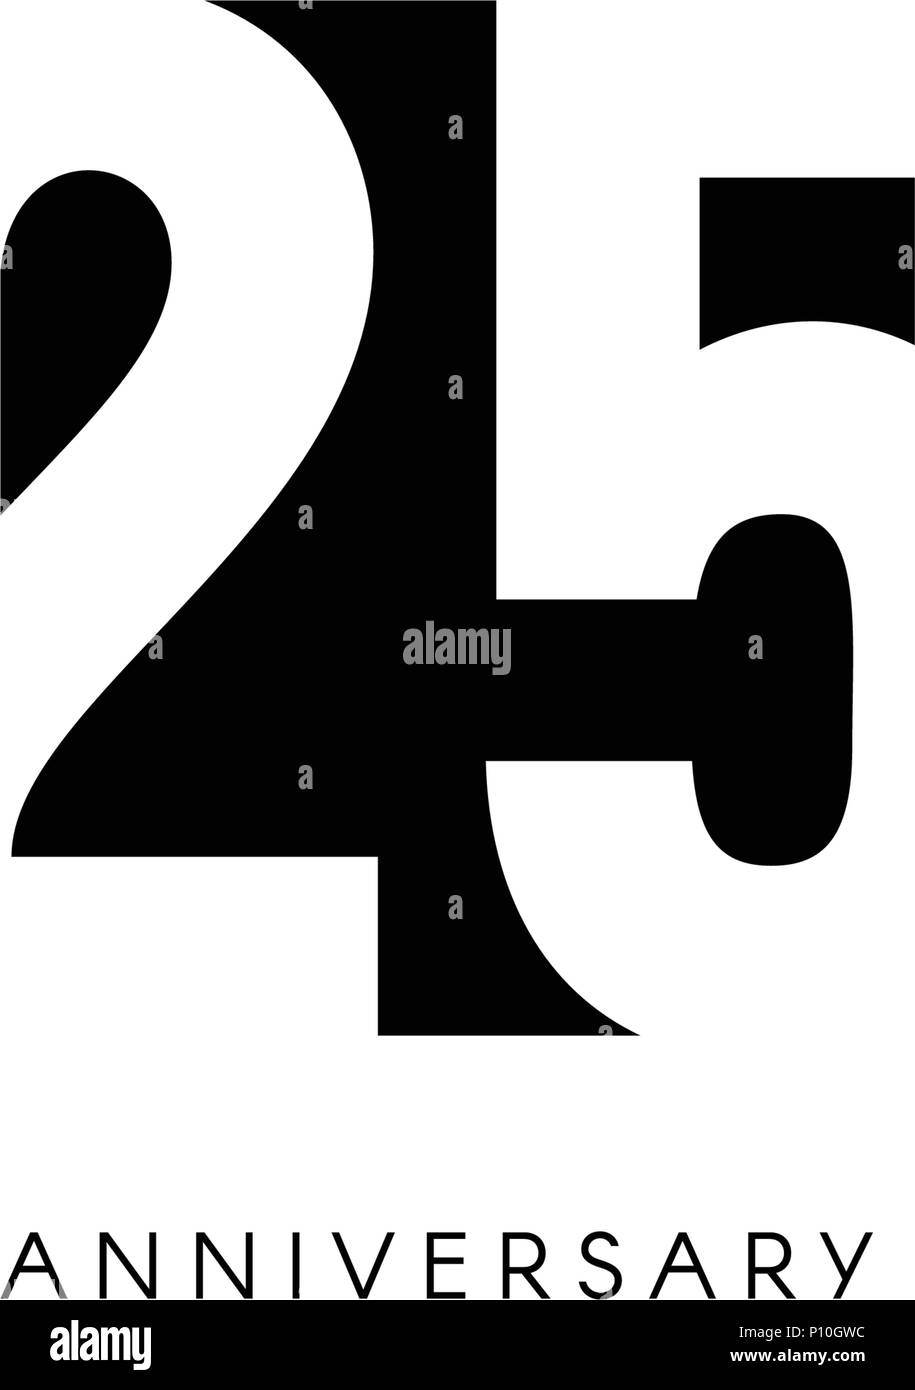 25 Jahrestag Minimalistisch Logo 20 5 Jahre 25 Jahrigen Jubilaums Grusskarten Geburtstag Einladung 25 Jahre Unterzeichnen Schwarz Negative Raumzeiger Abbildung Auf Weissen Hintergrund Stock Vektorgrafik Alamy